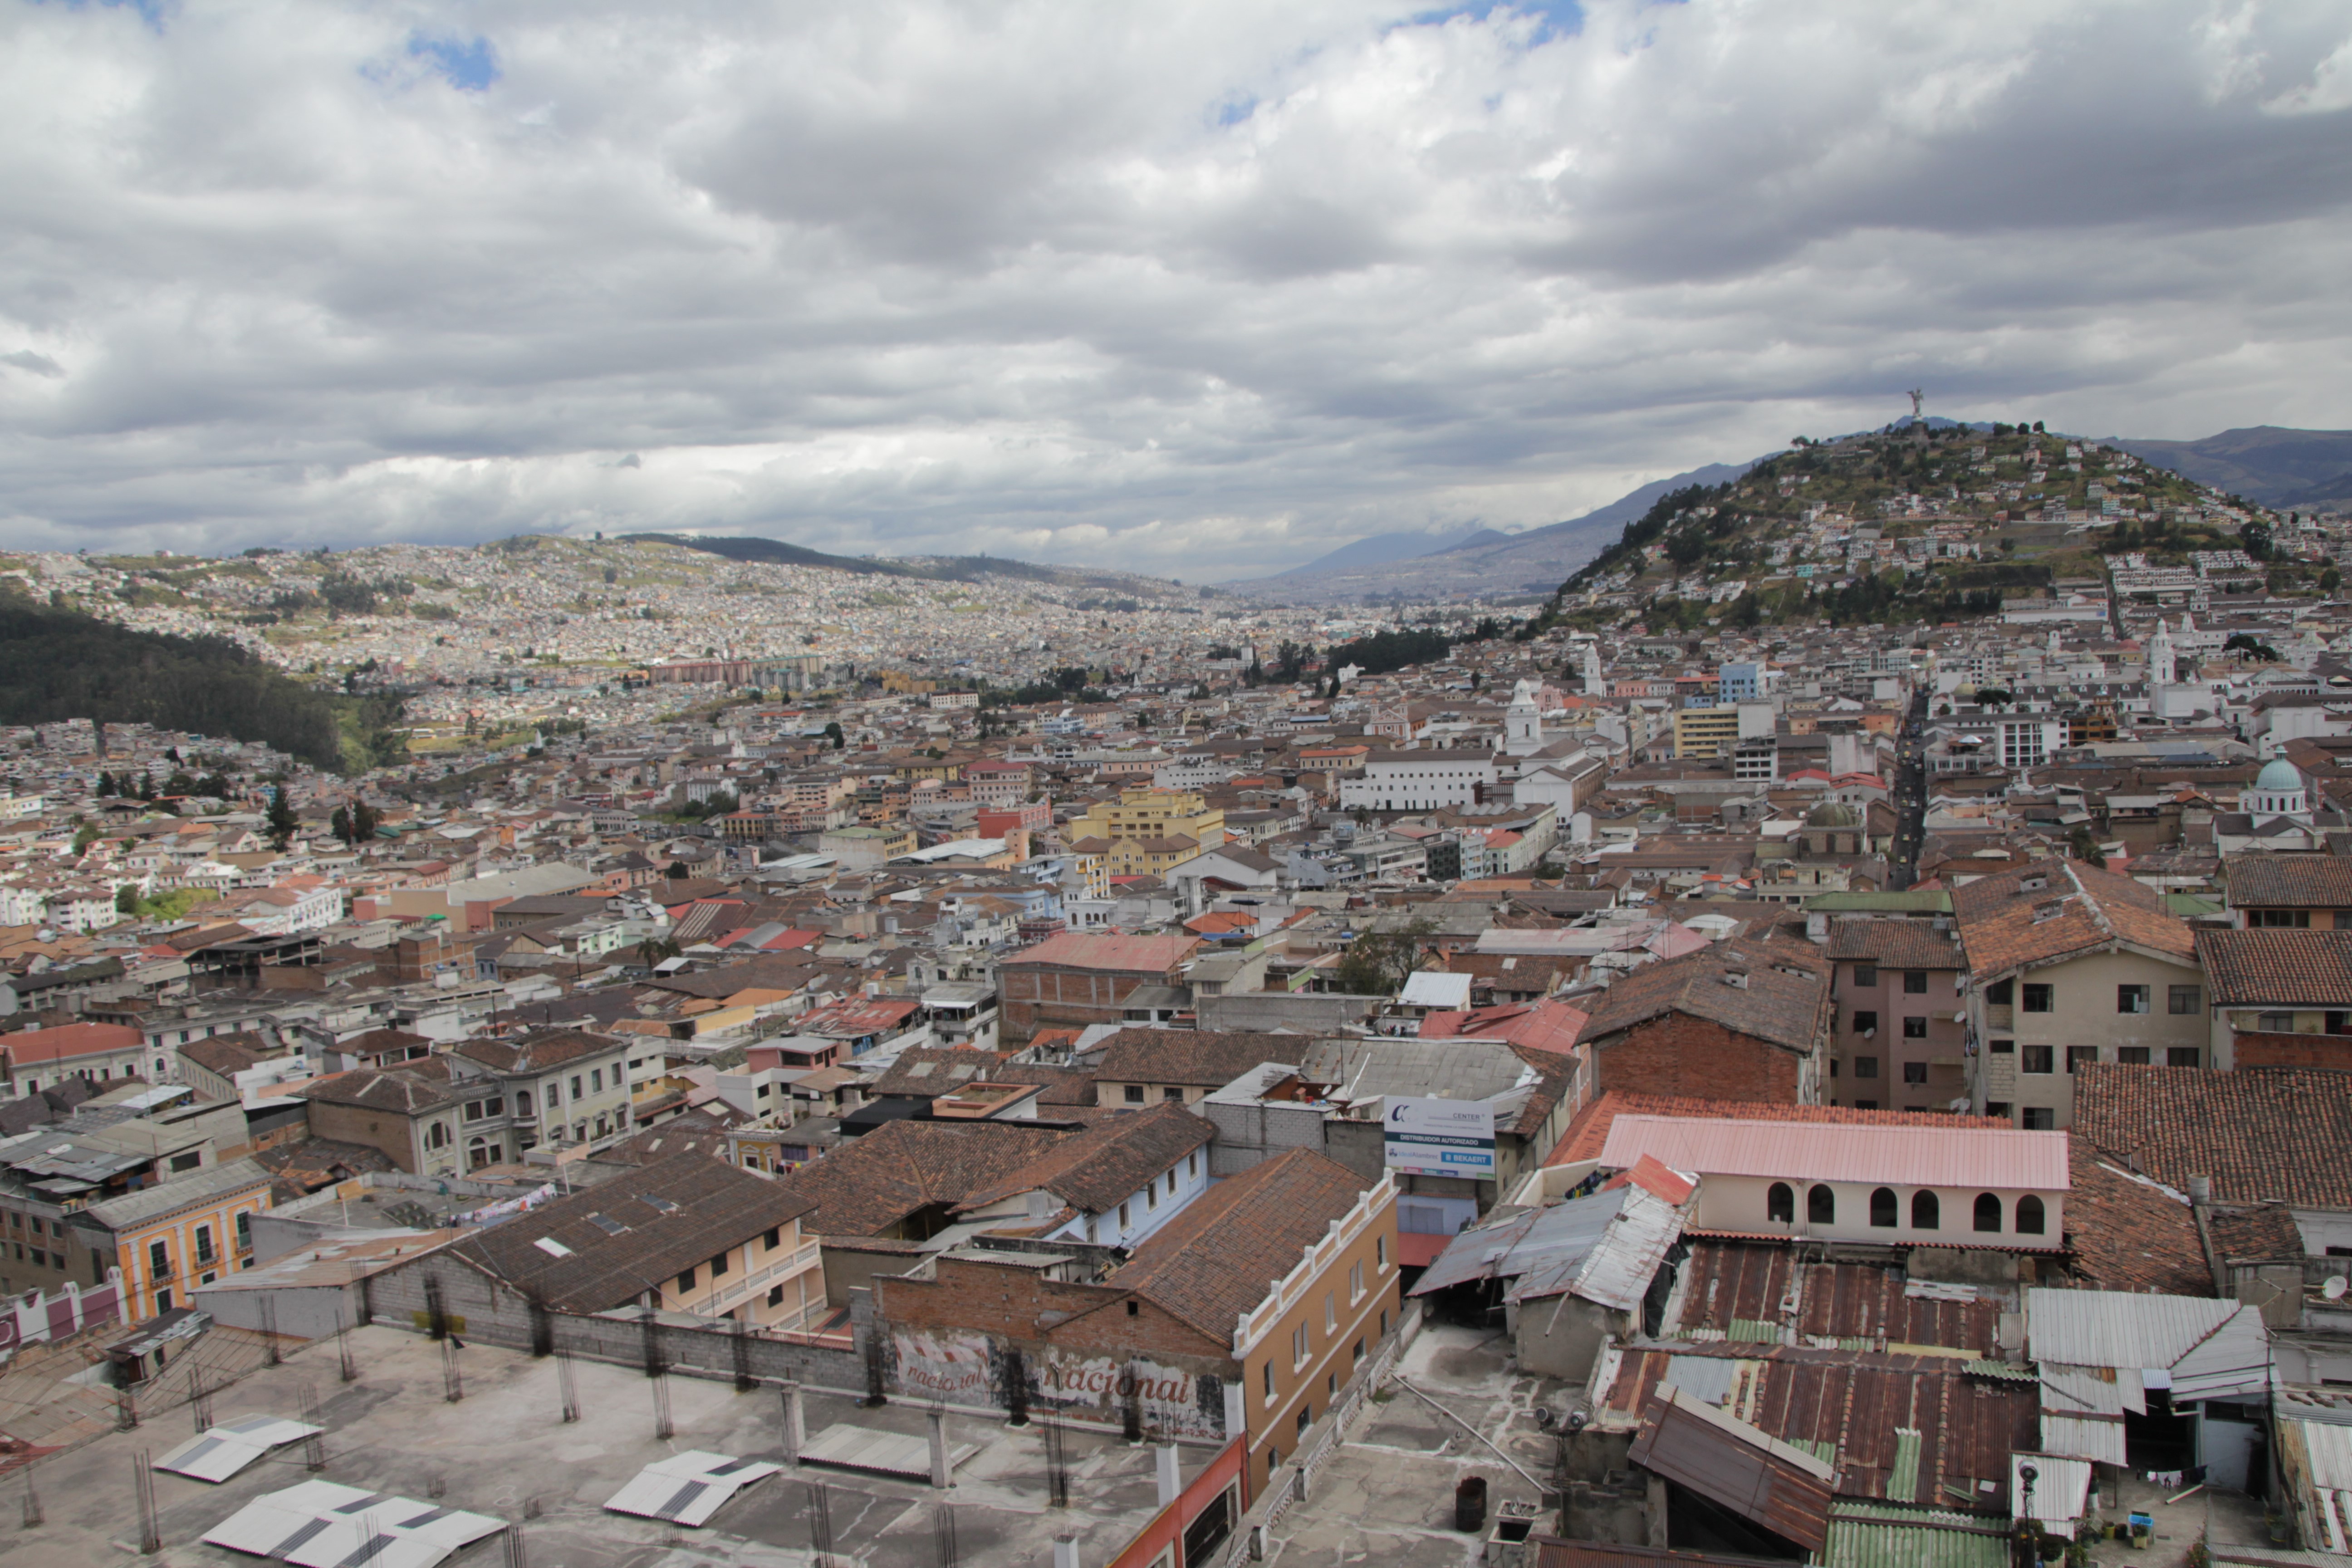 Le centre historique de Quito, classé au patrimoine mondial de l'Unesco (© Aurélie Bacheley).